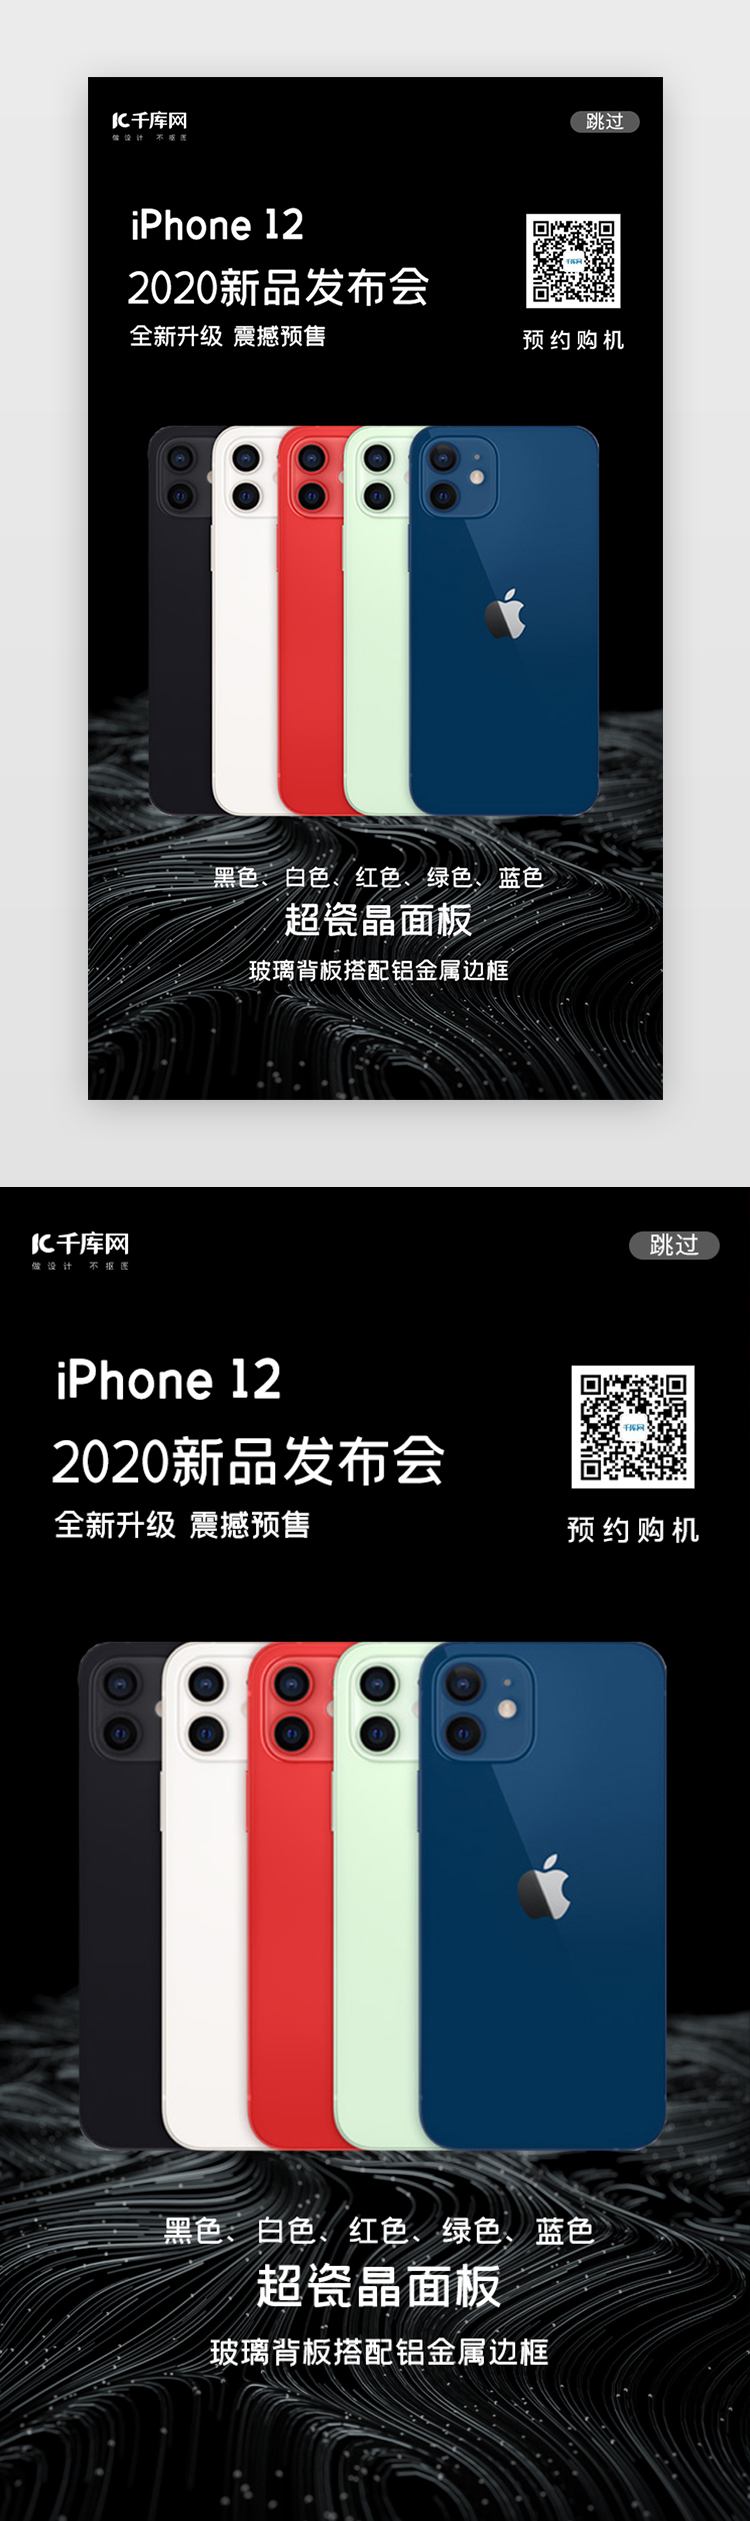 黑色多色iPhone12手机闪屏图片